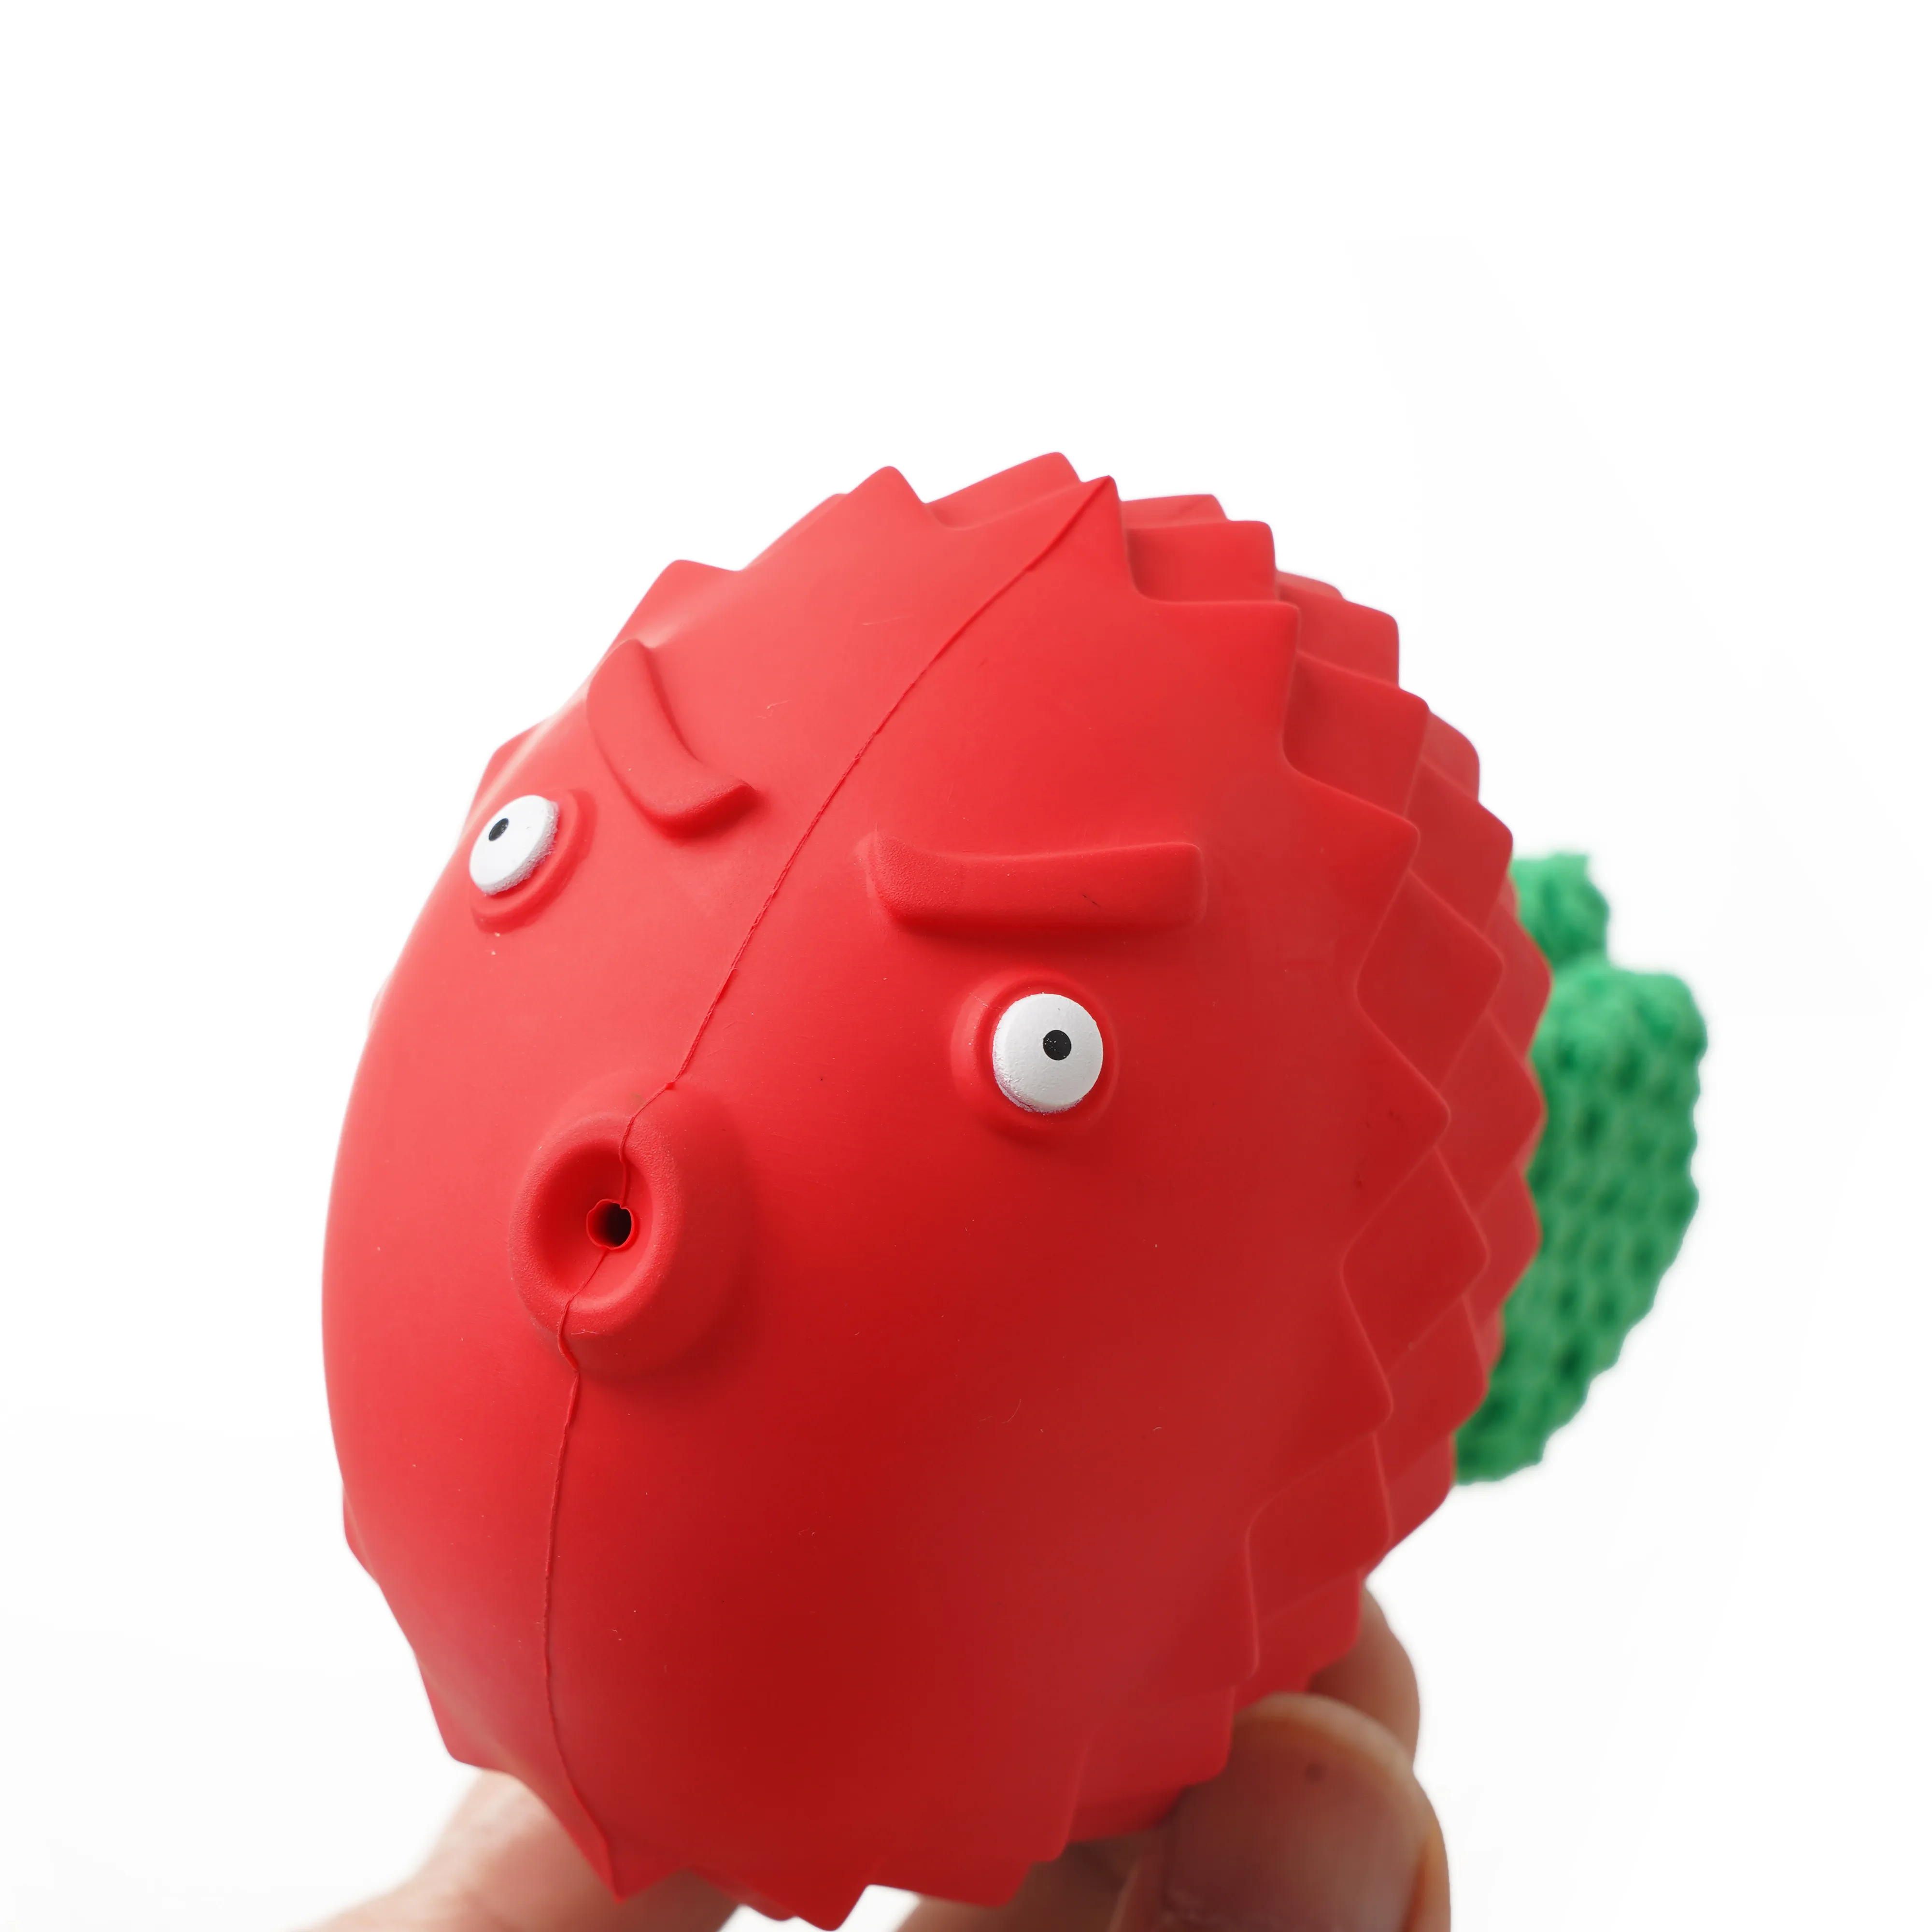 Köpek diş temizleme çiğnemek oyuncak peluş duyusal Pet oyuncaklar kızgın interaktif kuş köpek Squeaky ses oyuncaklar